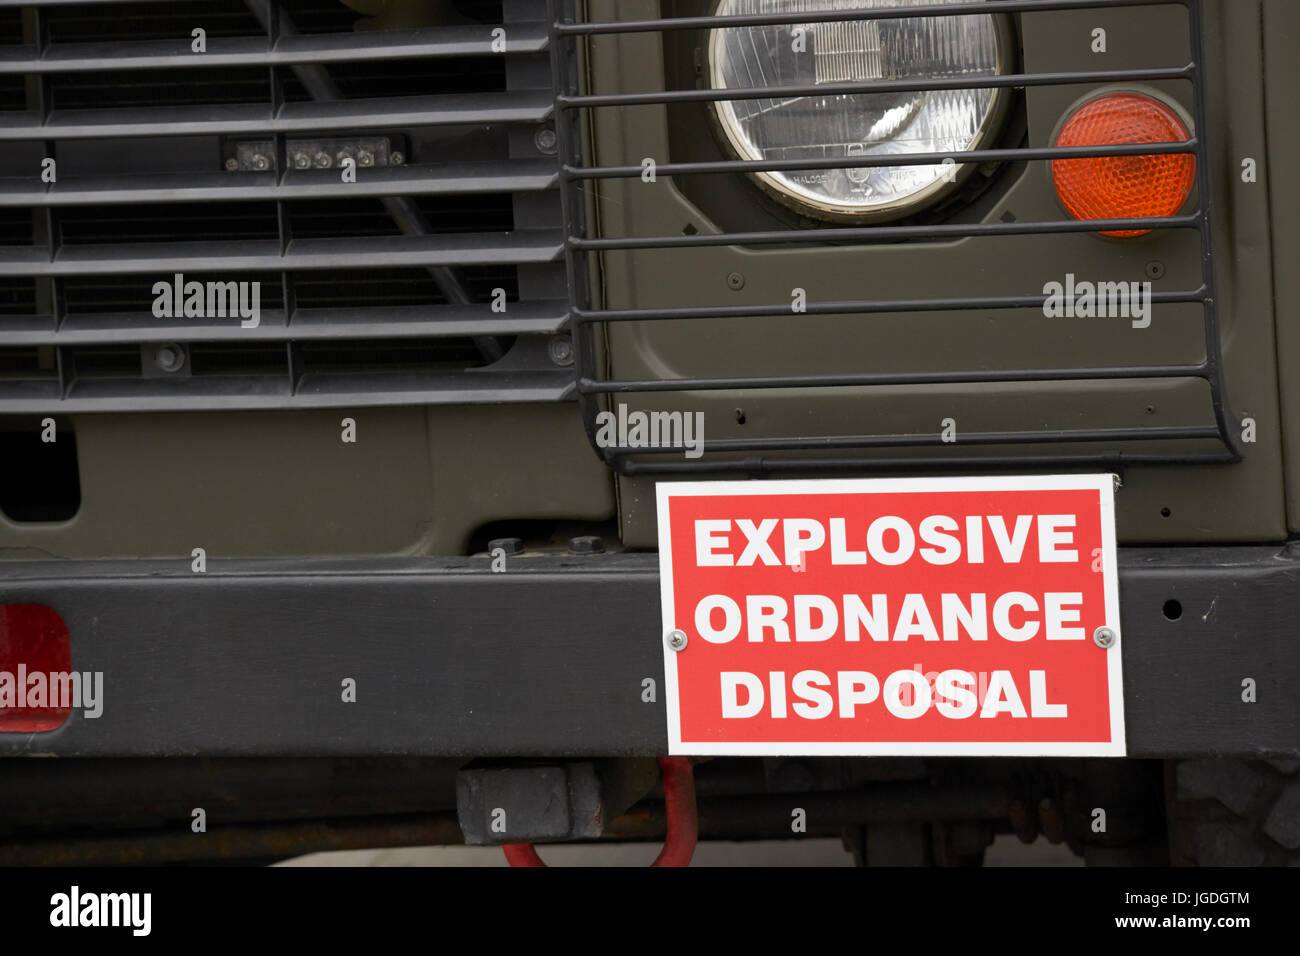 L'élimination des explosifs et munitions landrover armée britannique uk Banque D'Images